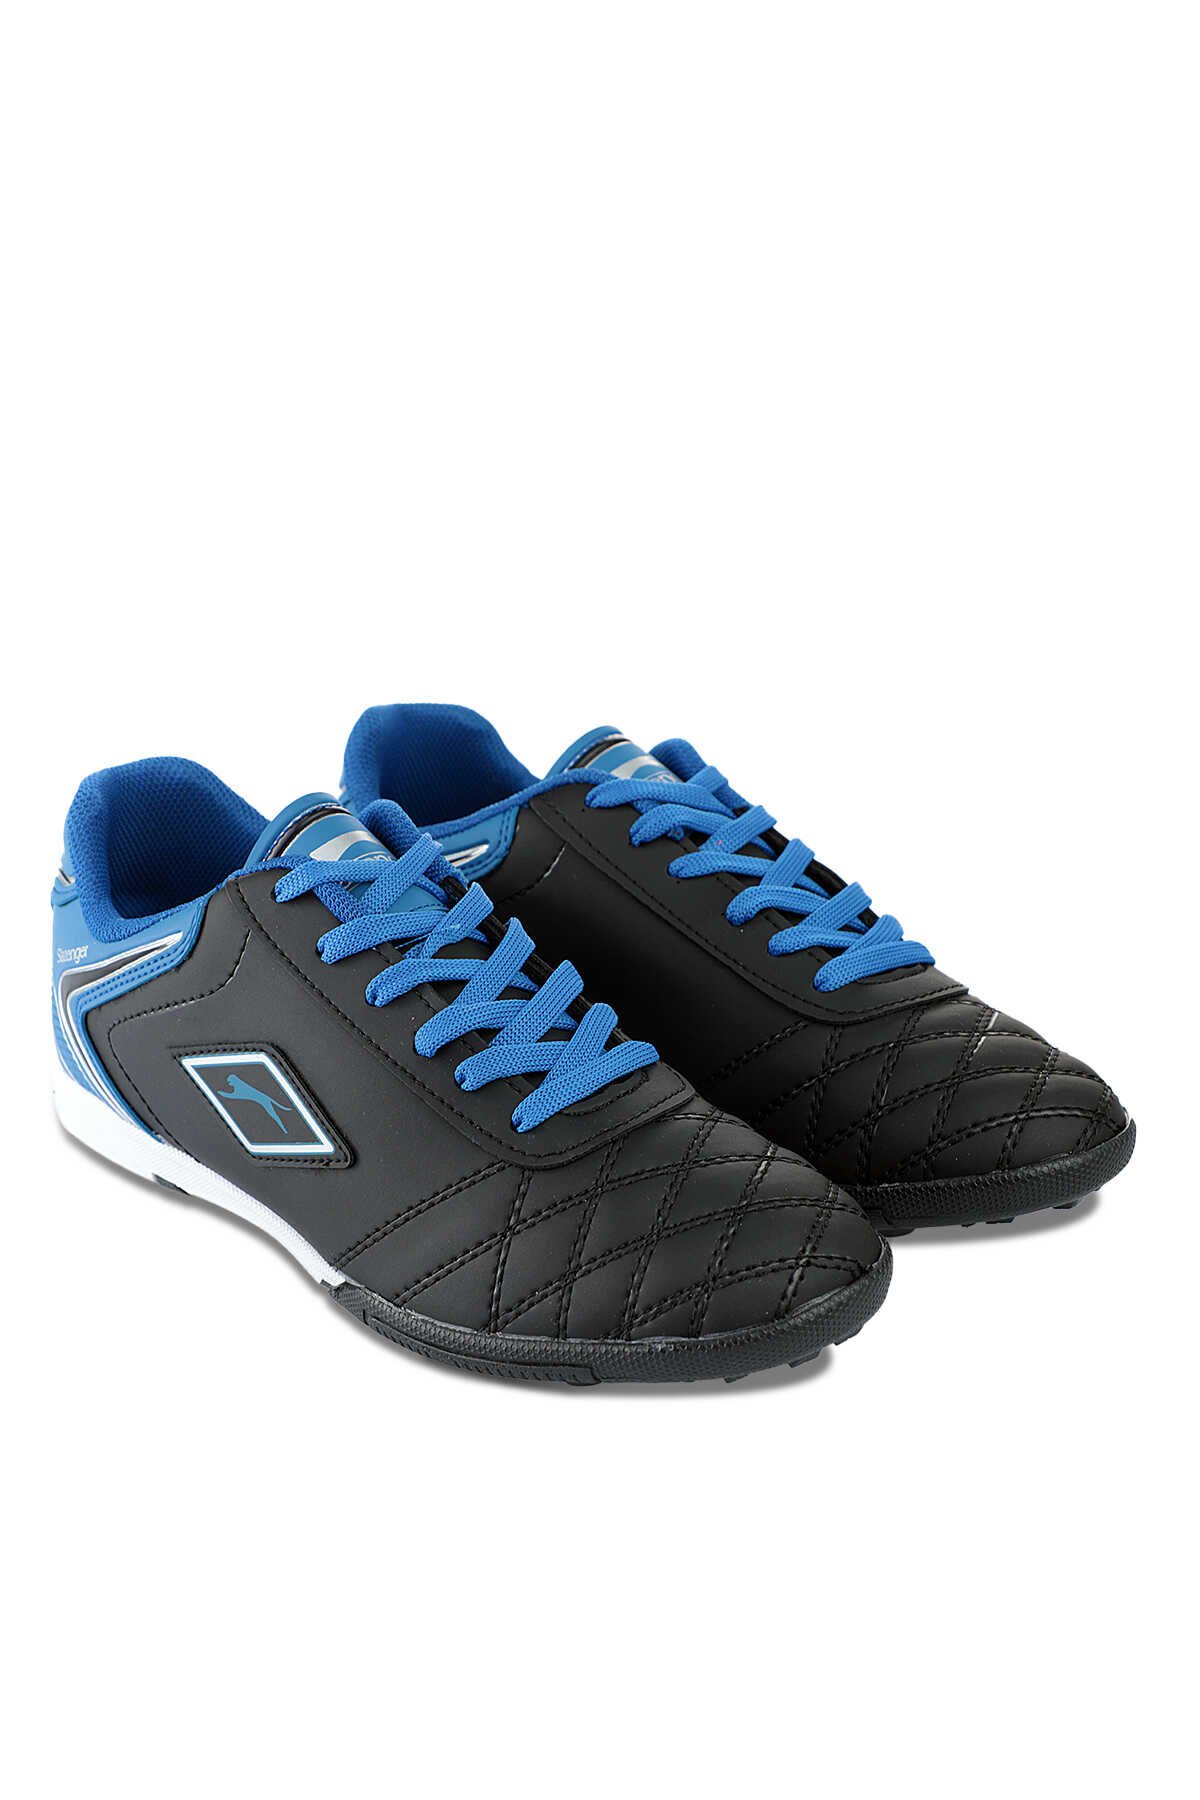 Slazenger HUGO HS Futbol Erkek Çocuk Halı Saha Ayakkabı Siyah / Mavi